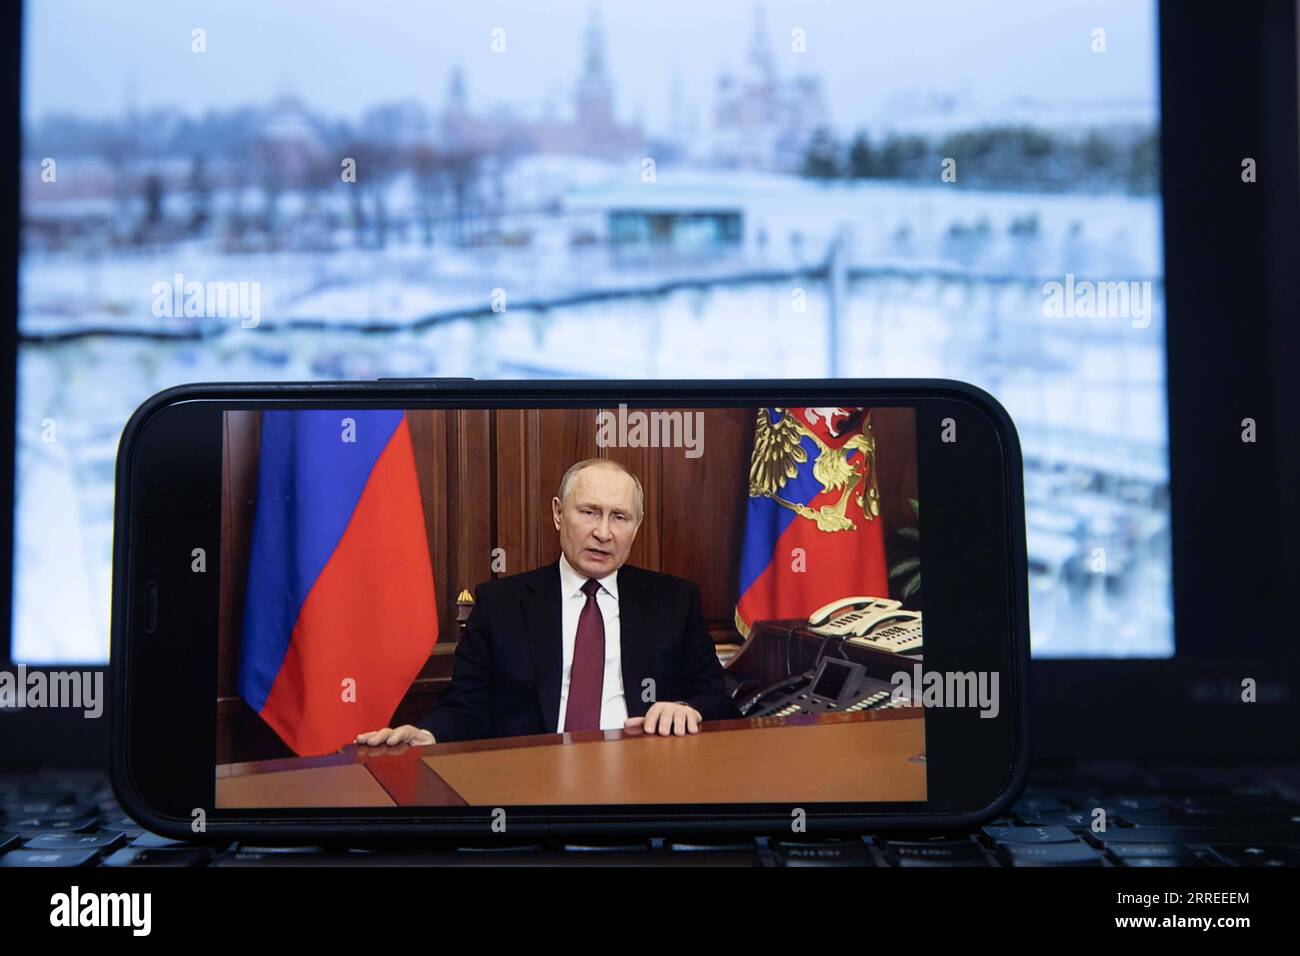 220224 -- MOSKAU, 24. Februar 2022 -- das Foto vom 24. Februar 2022 zeigt einen Bildschirm, auf dem der russische Präsident Wladimir Putin während einer Fernsehansprache in Moskau, Russland, spricht. MIT Putin ZUSAMMEN ZU GEHEN genehmigt besondere militärische Operation in der Donbass-Region RUSSLAND-MOSKAU-PUTIN-TV-ADRESSE BaixXueqi PUBLICATIONxNOTxINxCHN Stockfoto